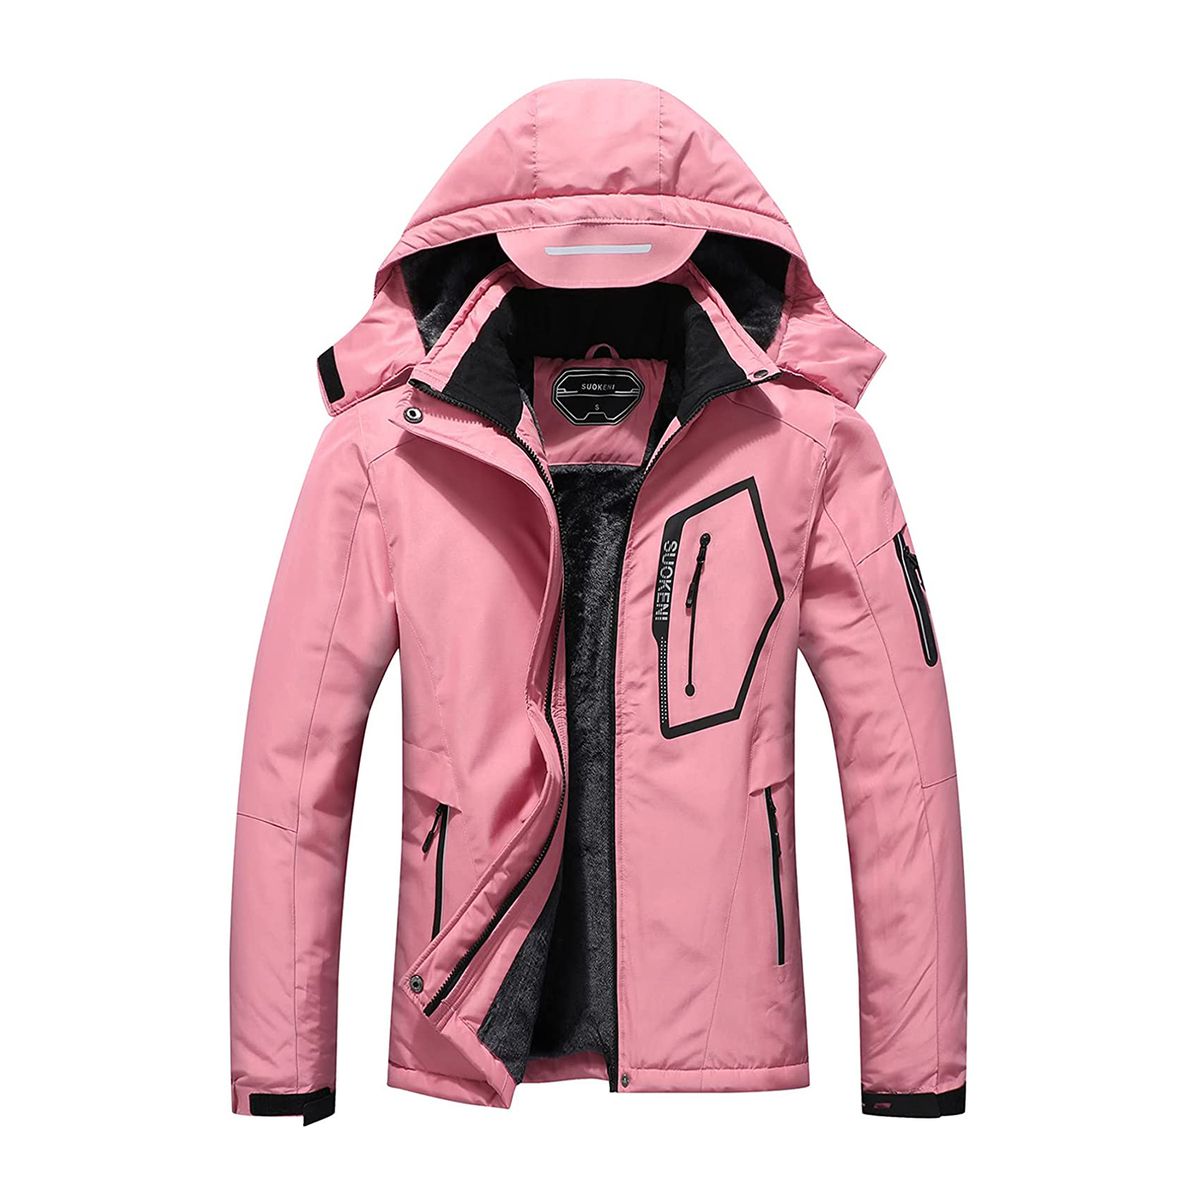 Suokeni Women's Ski Jacket in Pink